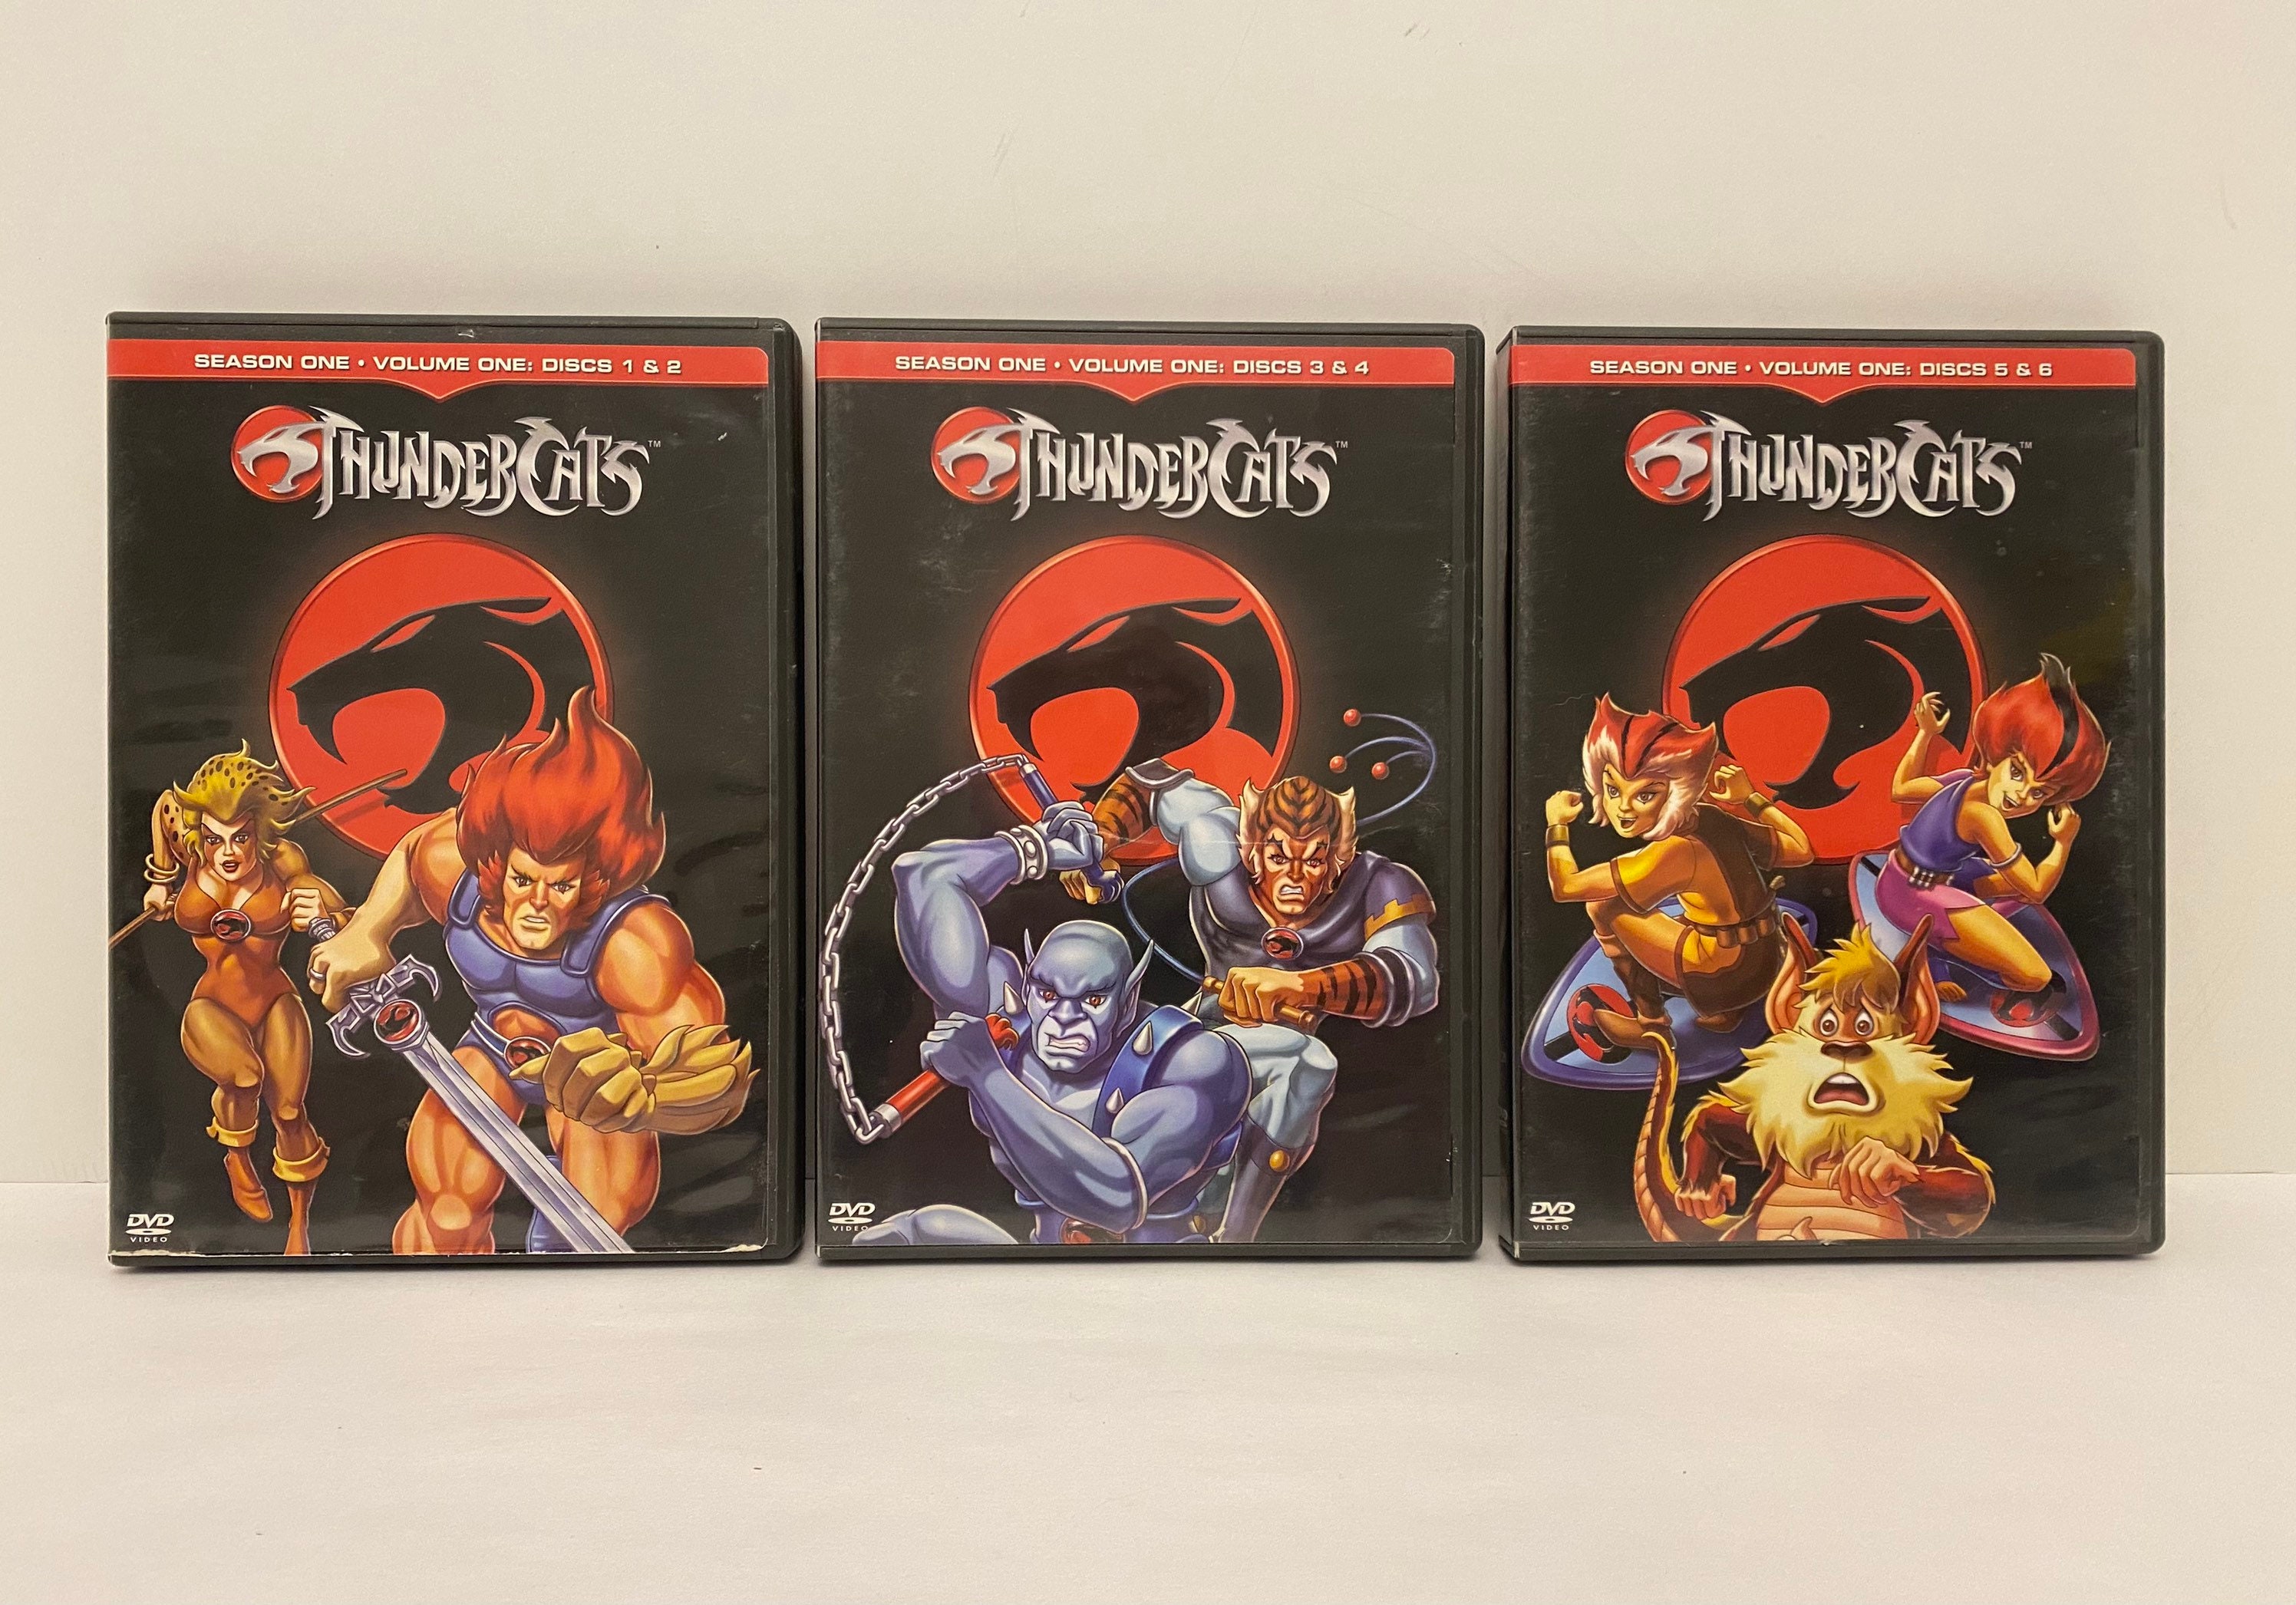 Thundercats: Season 1 Vol 1 Discs 1-6. 